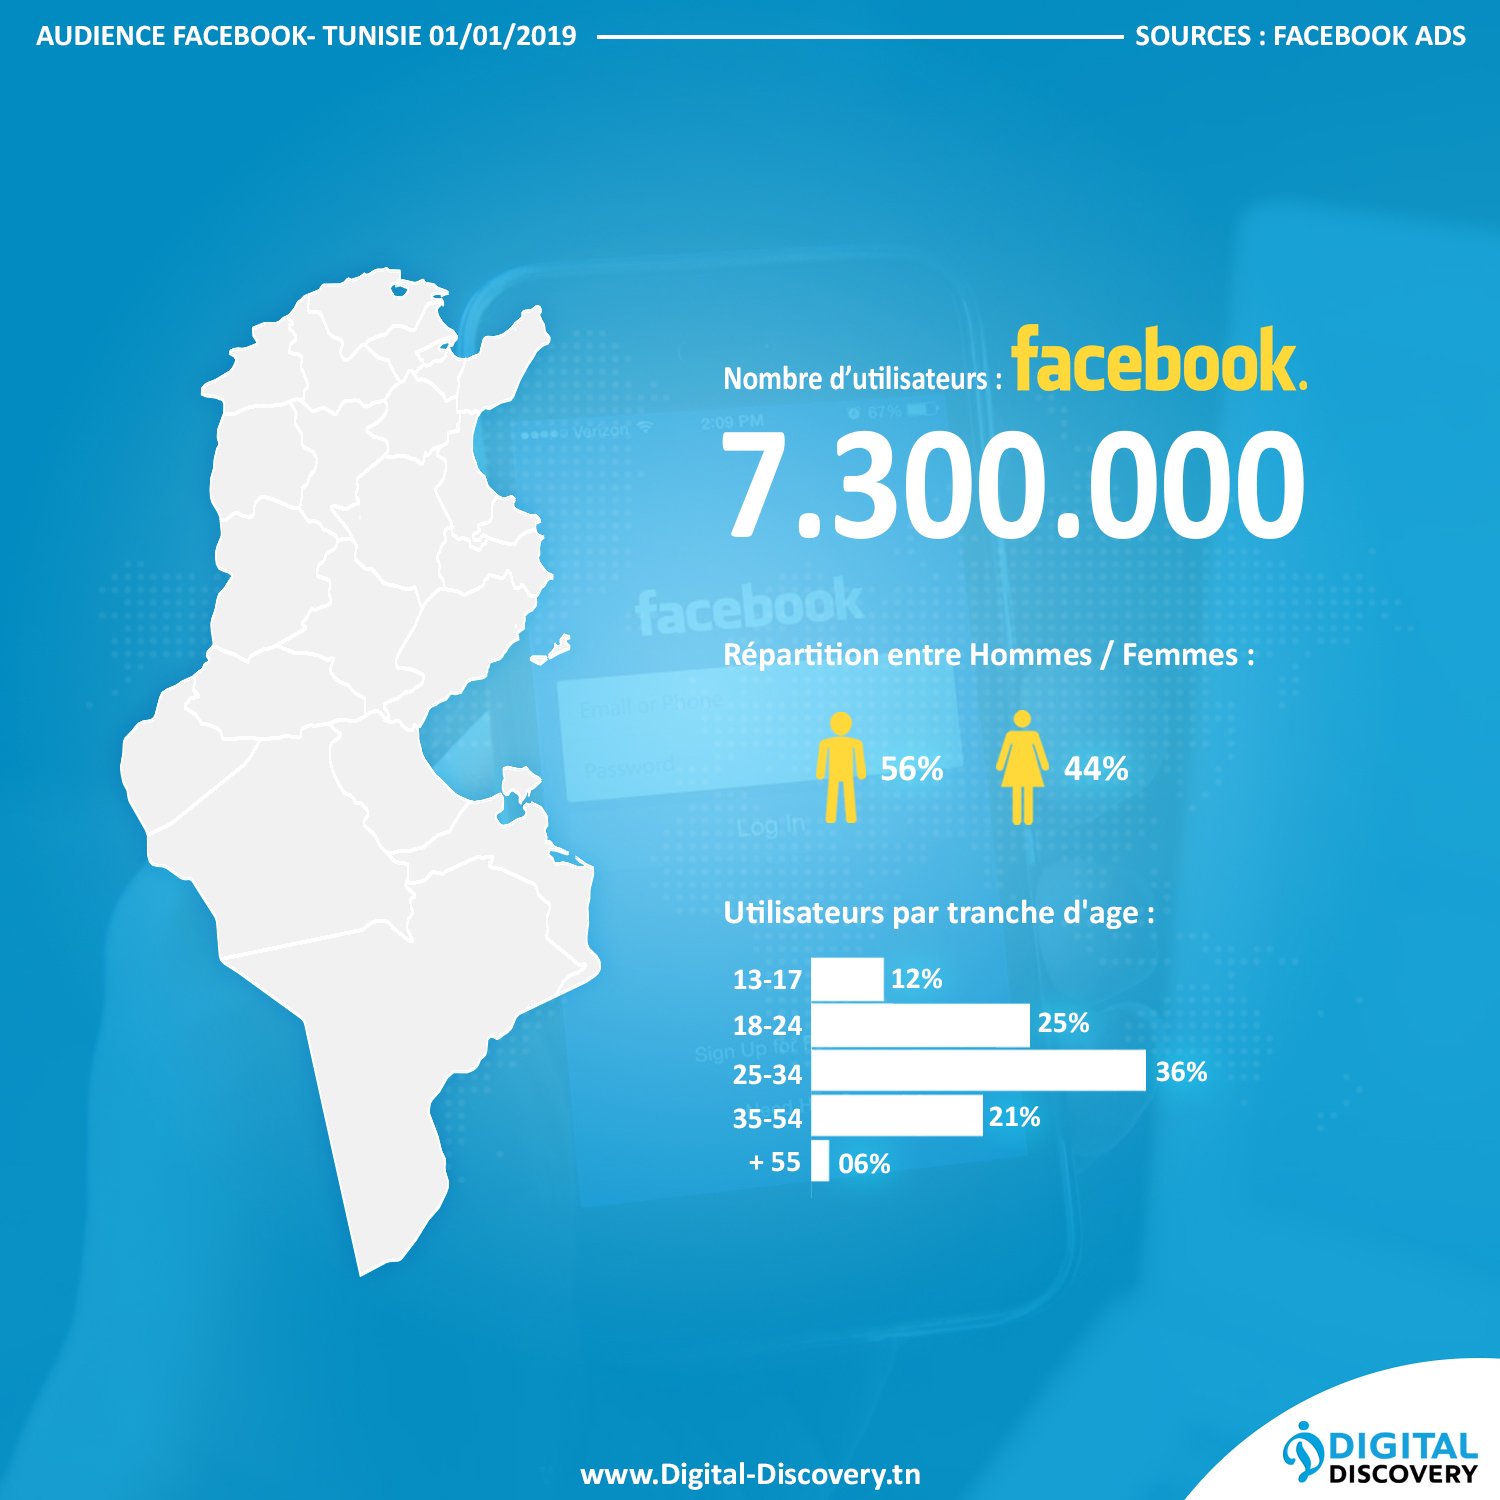 chiffres statistiques Facebook tunisie 2019